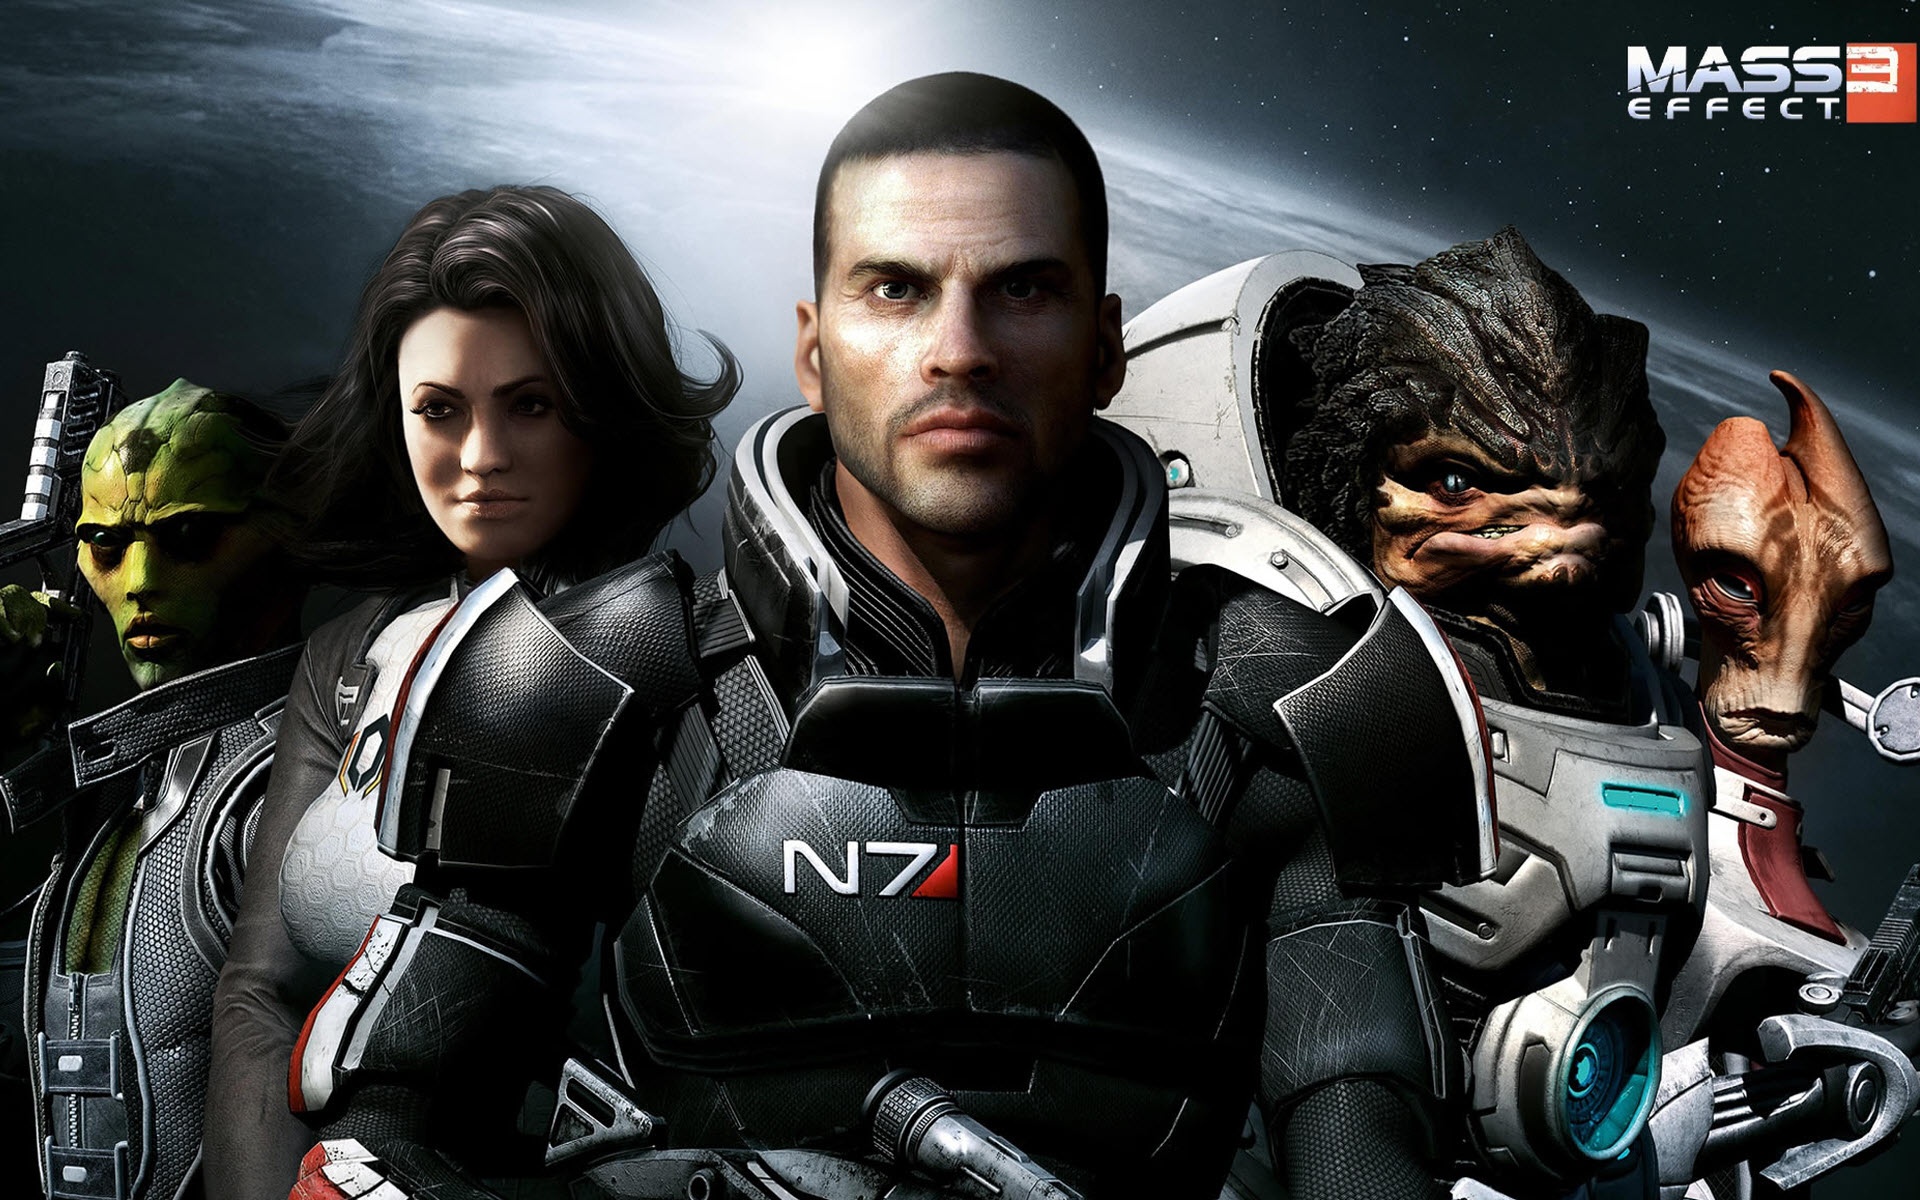 Mass Effect 3 Art